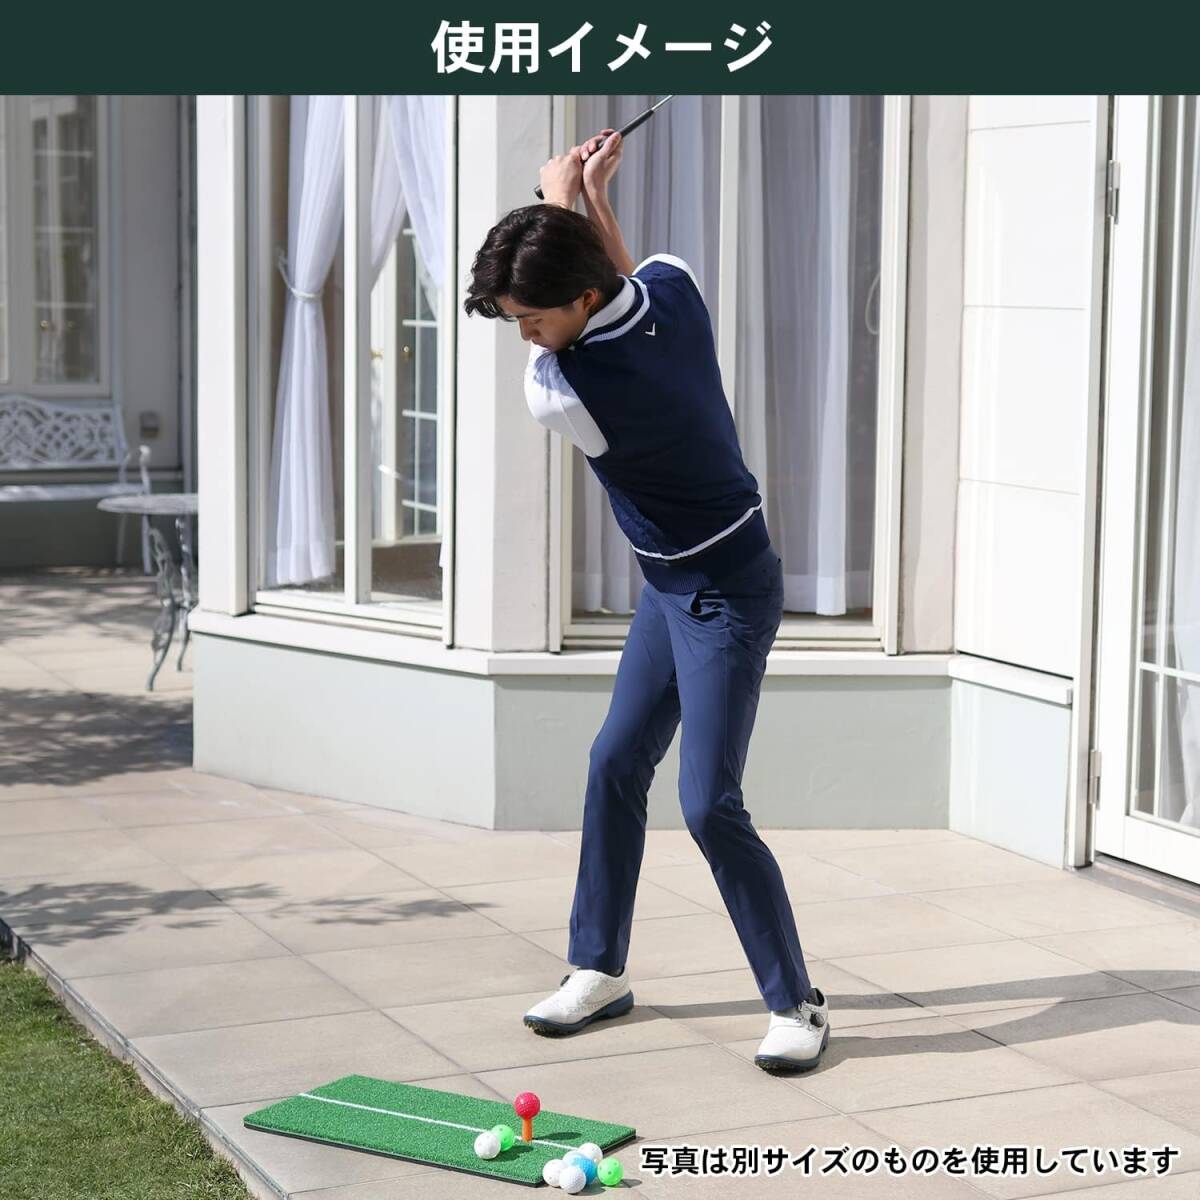 Tabata(タバタ) ゴルフ ティー 練習マット対応 ゴムティー パーマネントティー 3サイズセットの画像6